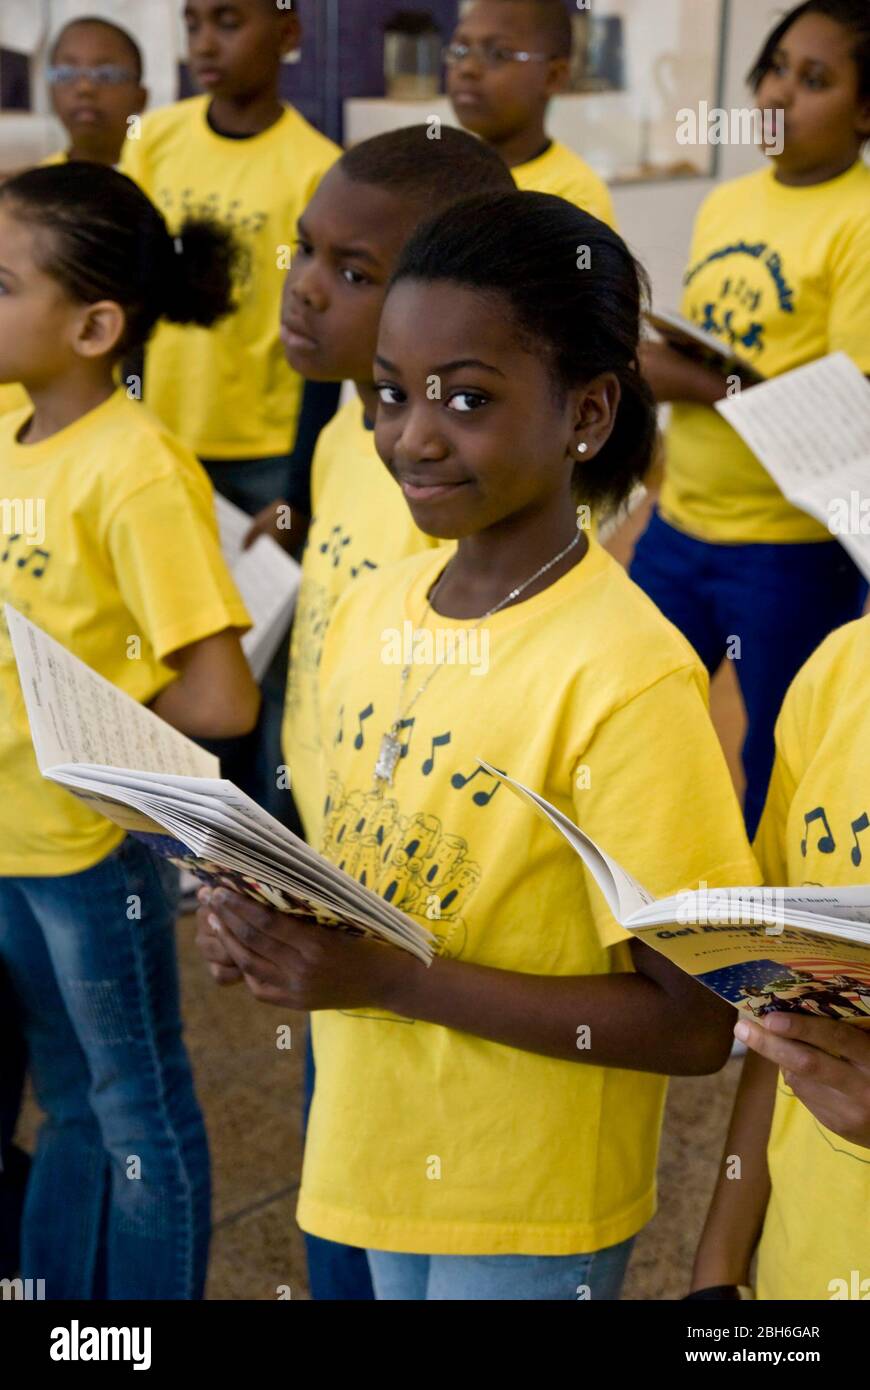 Austin, Texas États-Unis, 20 janvier 2009. Le choeur d'une école primaire essentiellement afro-américaine se produit dans une bibliothèque publique. ©Bob Daemmrich Banque D'Images